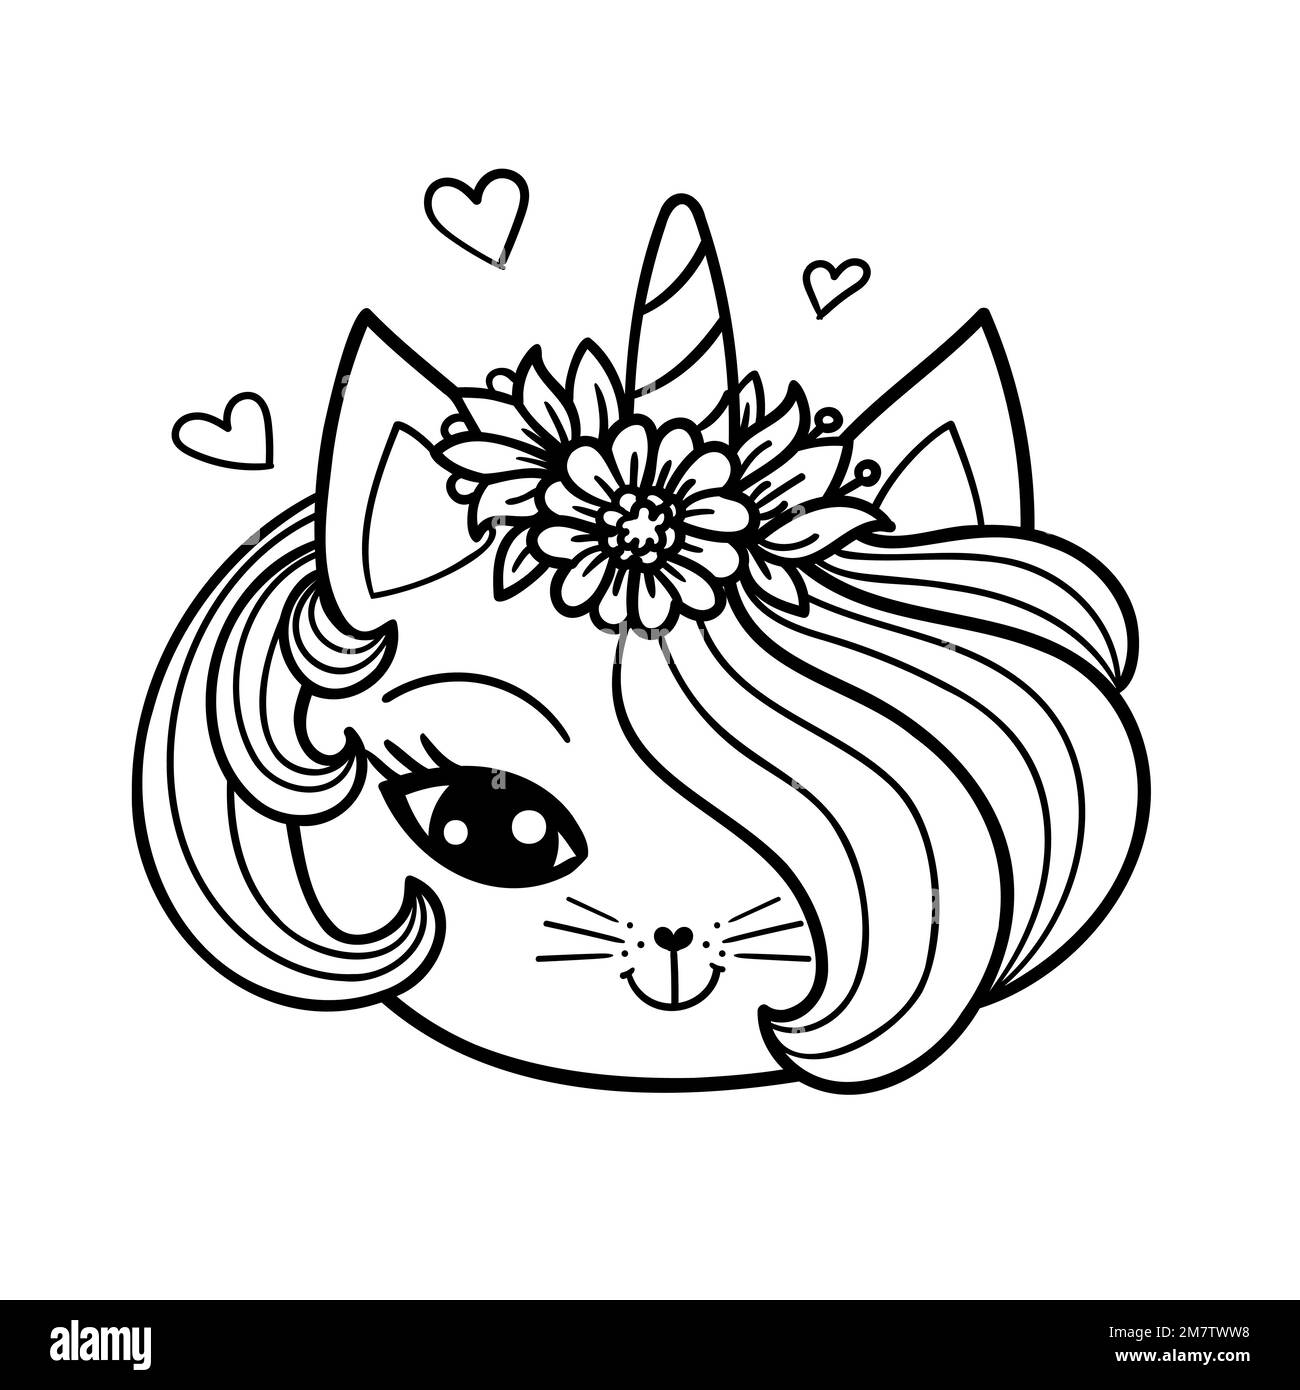 https://c8.alamy.com/compes/2m7tww8/la-cabeza-de-un-lindo-gato-unicornio-dibujo-lineal-blanco-y-negro-estilo-doodle-para-el-diseno-infantil-de-libros-para-colorear-impresiones-carteles-pegatinas-post-2m7tww8.jpg